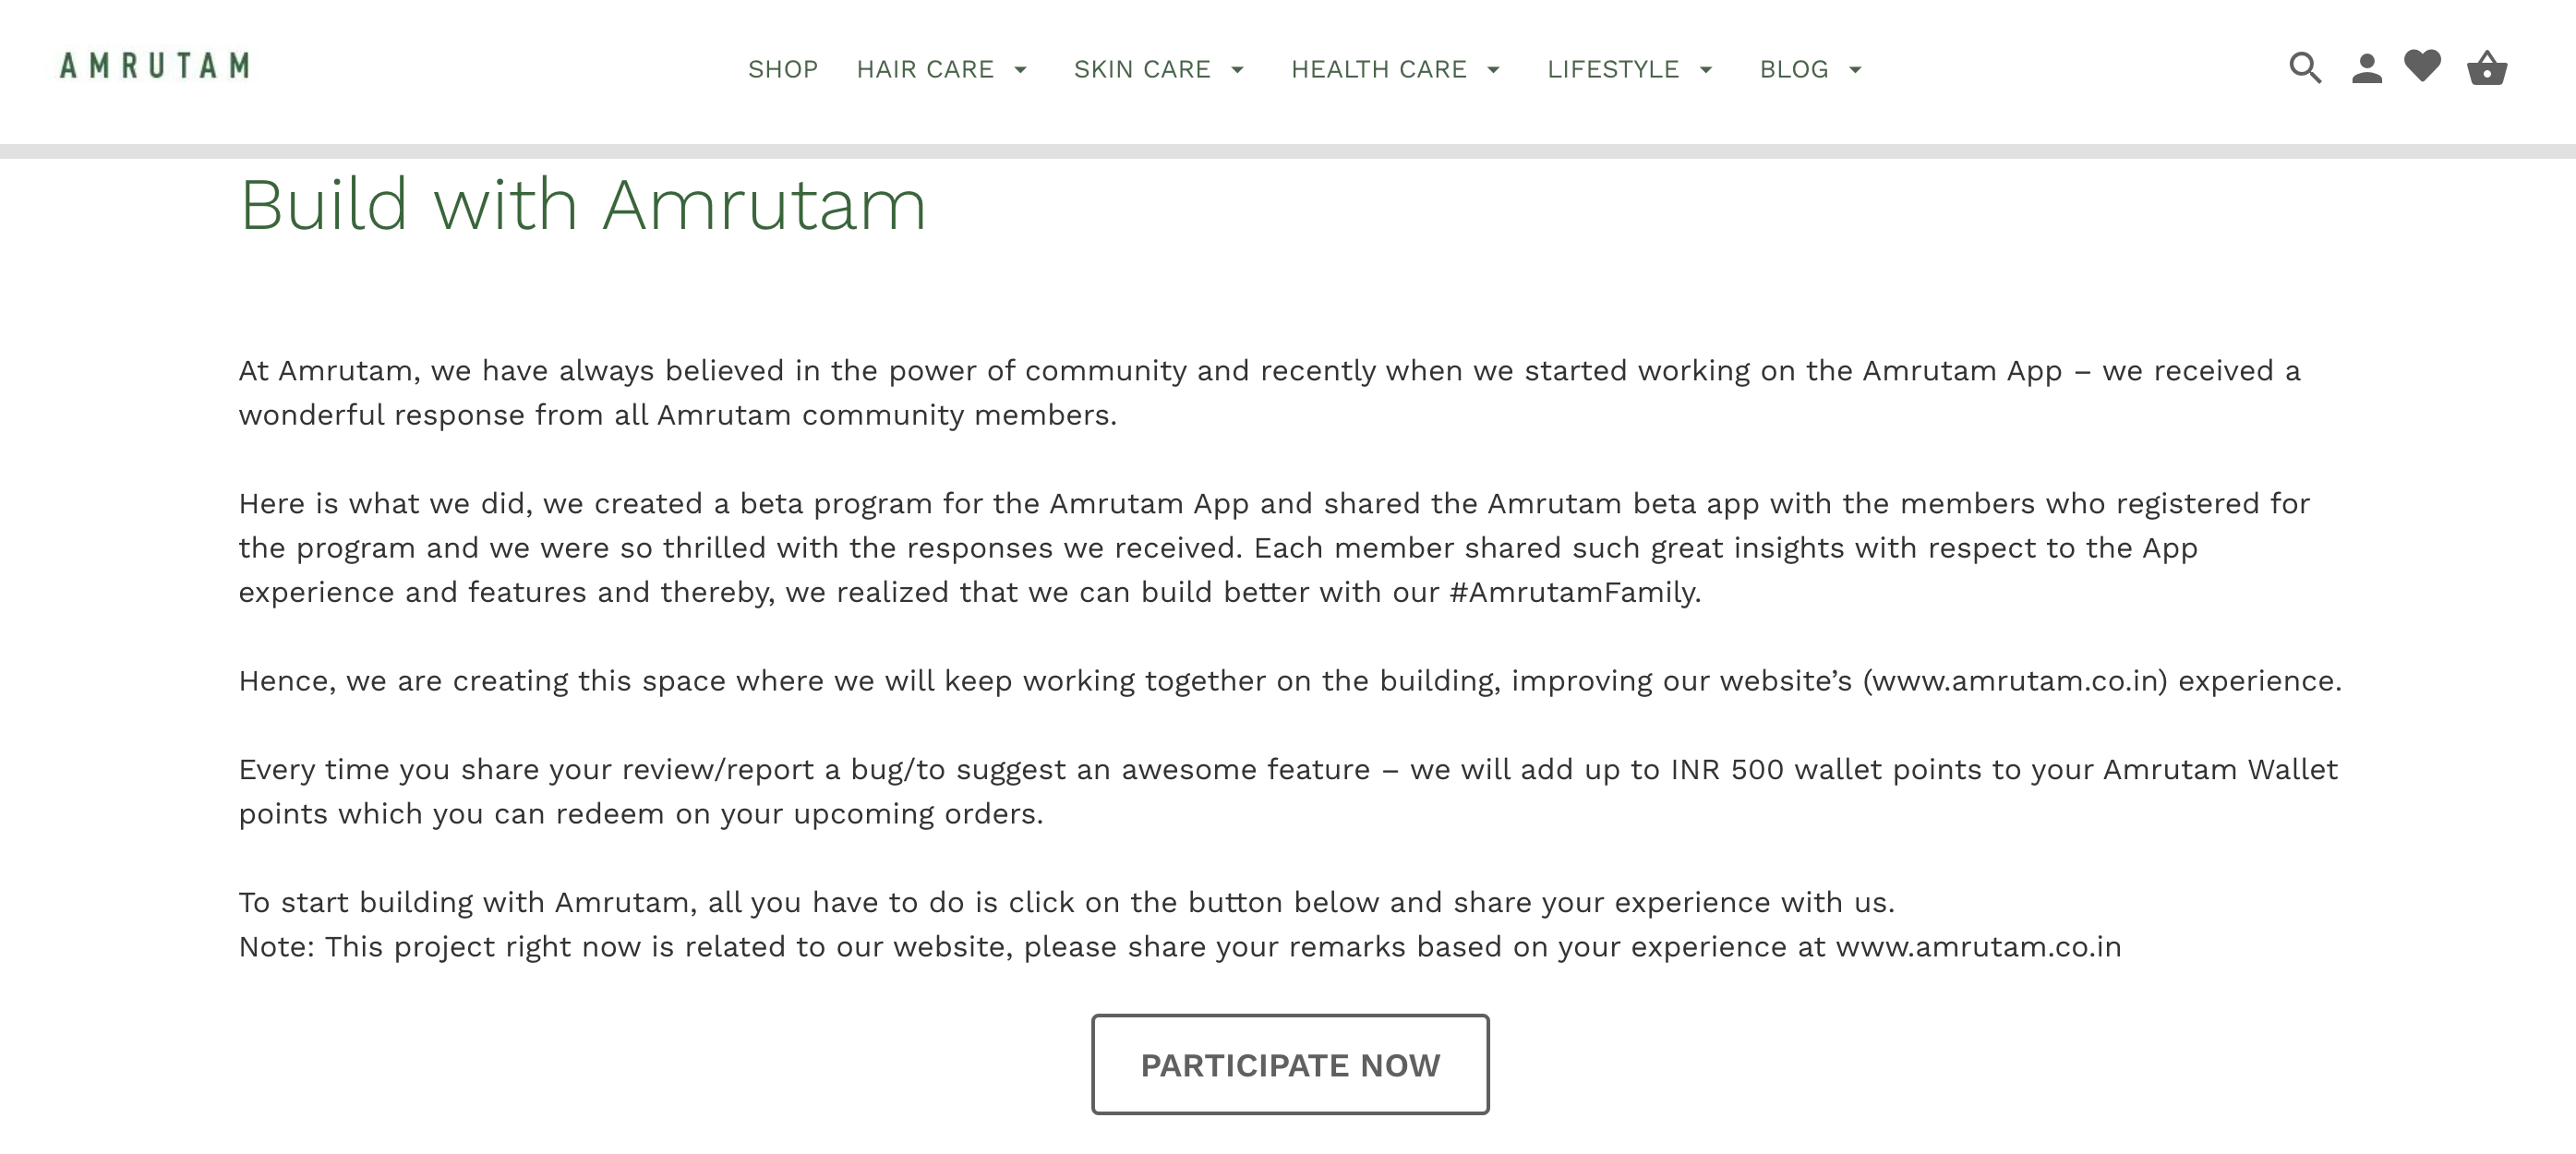 amrutam - ecommerce community